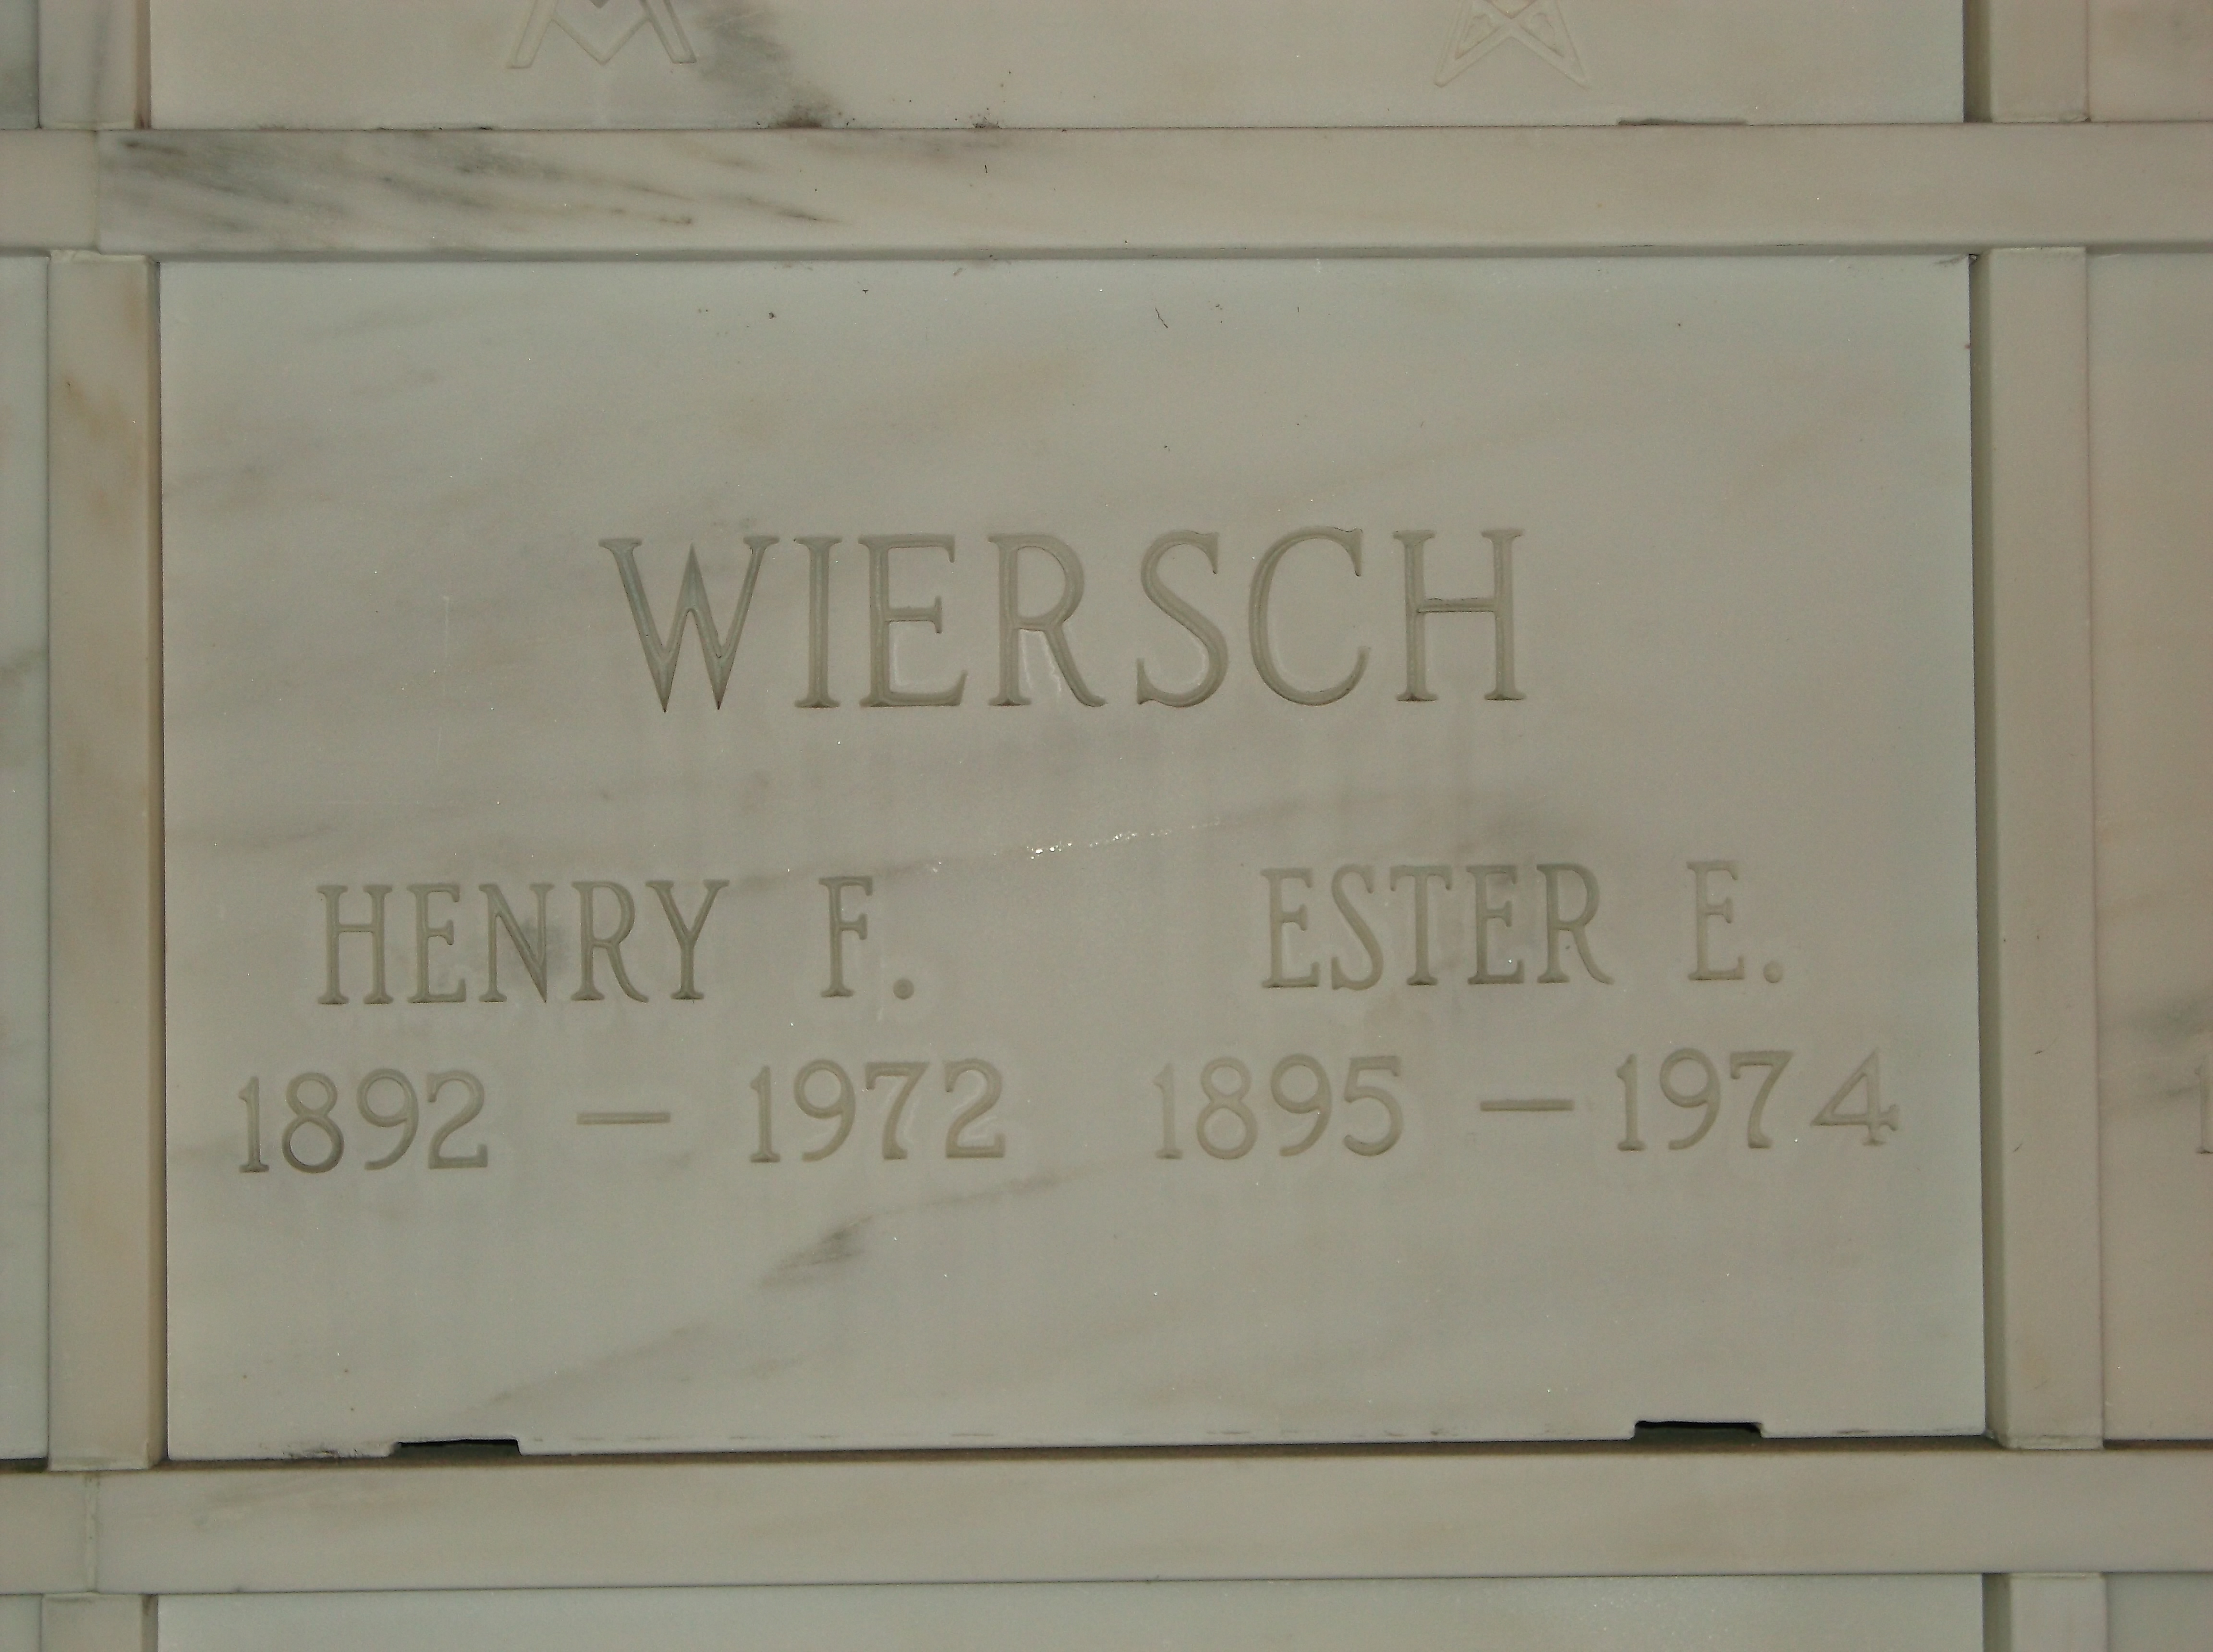 Henry F Wiersch